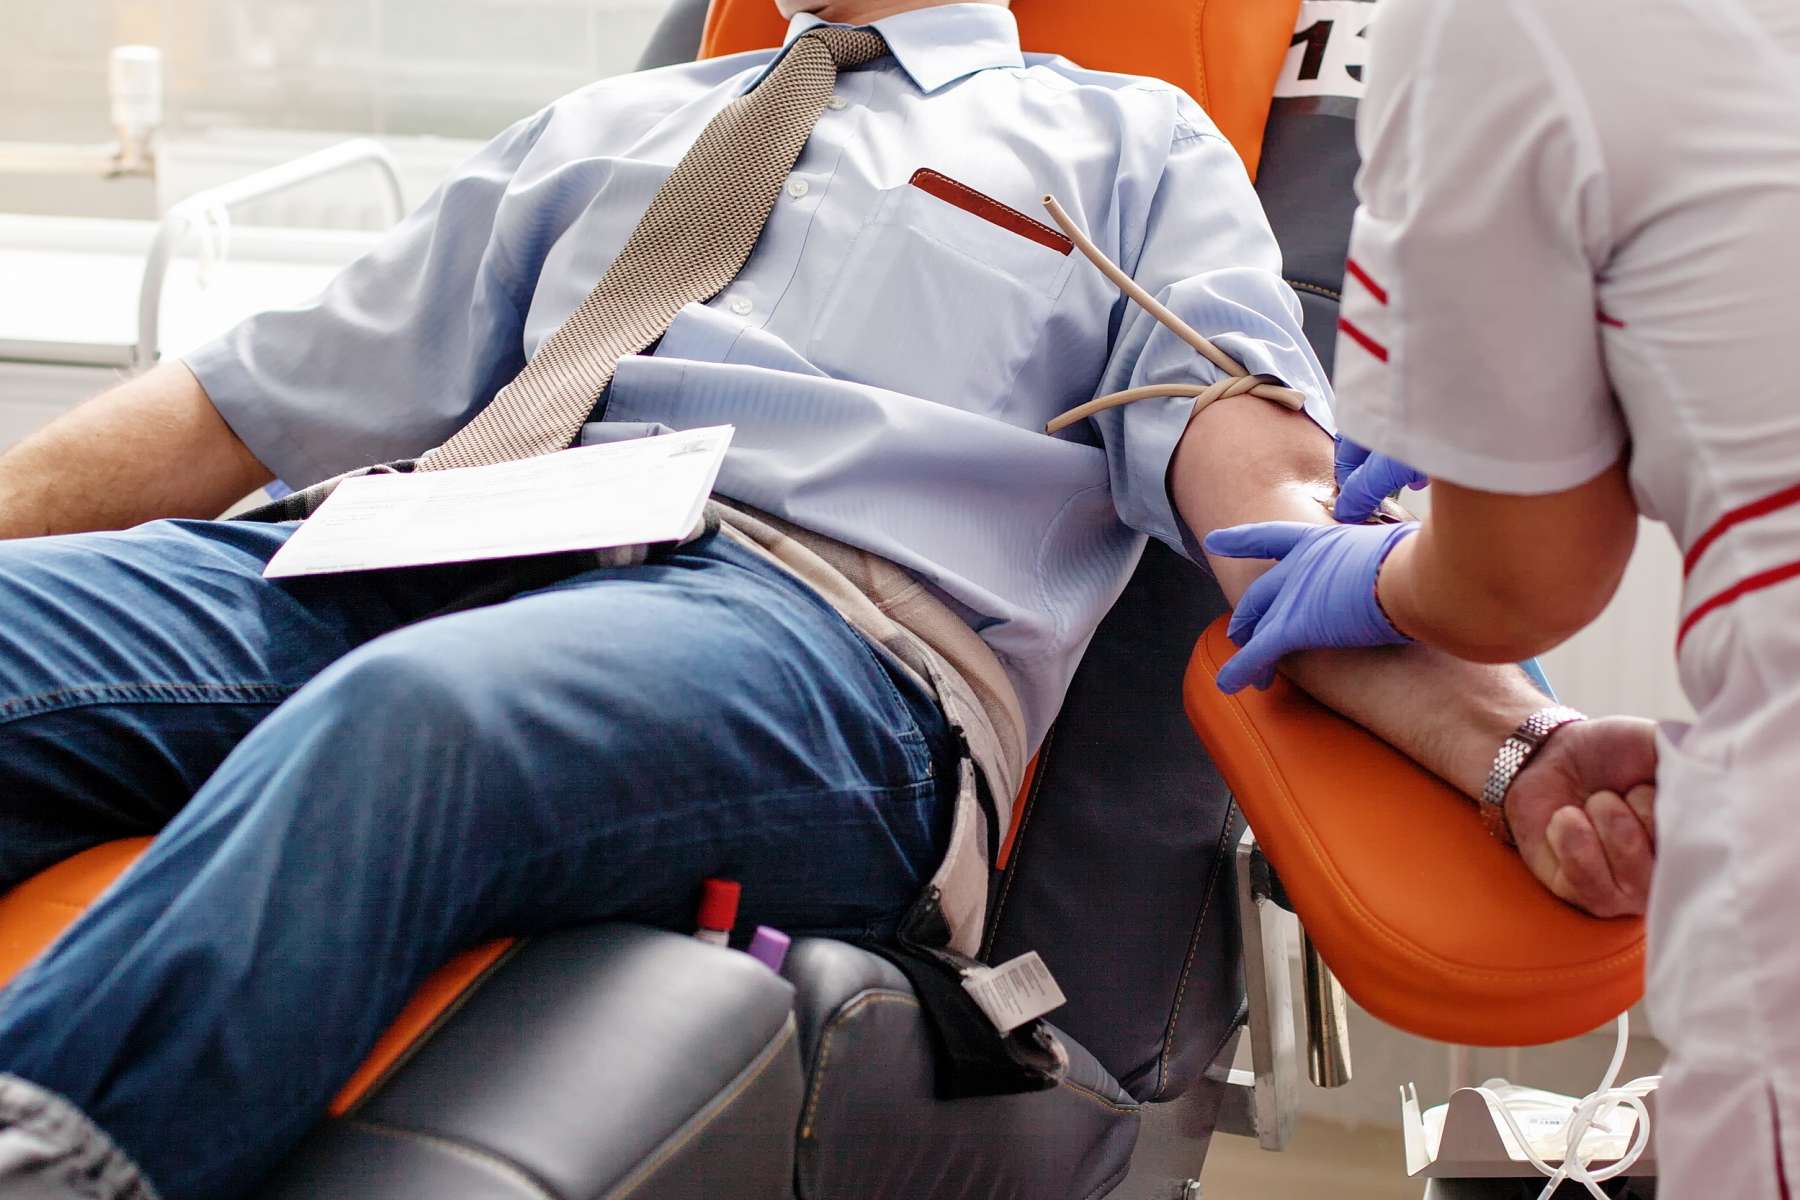 14 juin, journée mondiale du donneur de sang : les réserves de sang en permanence sous tension